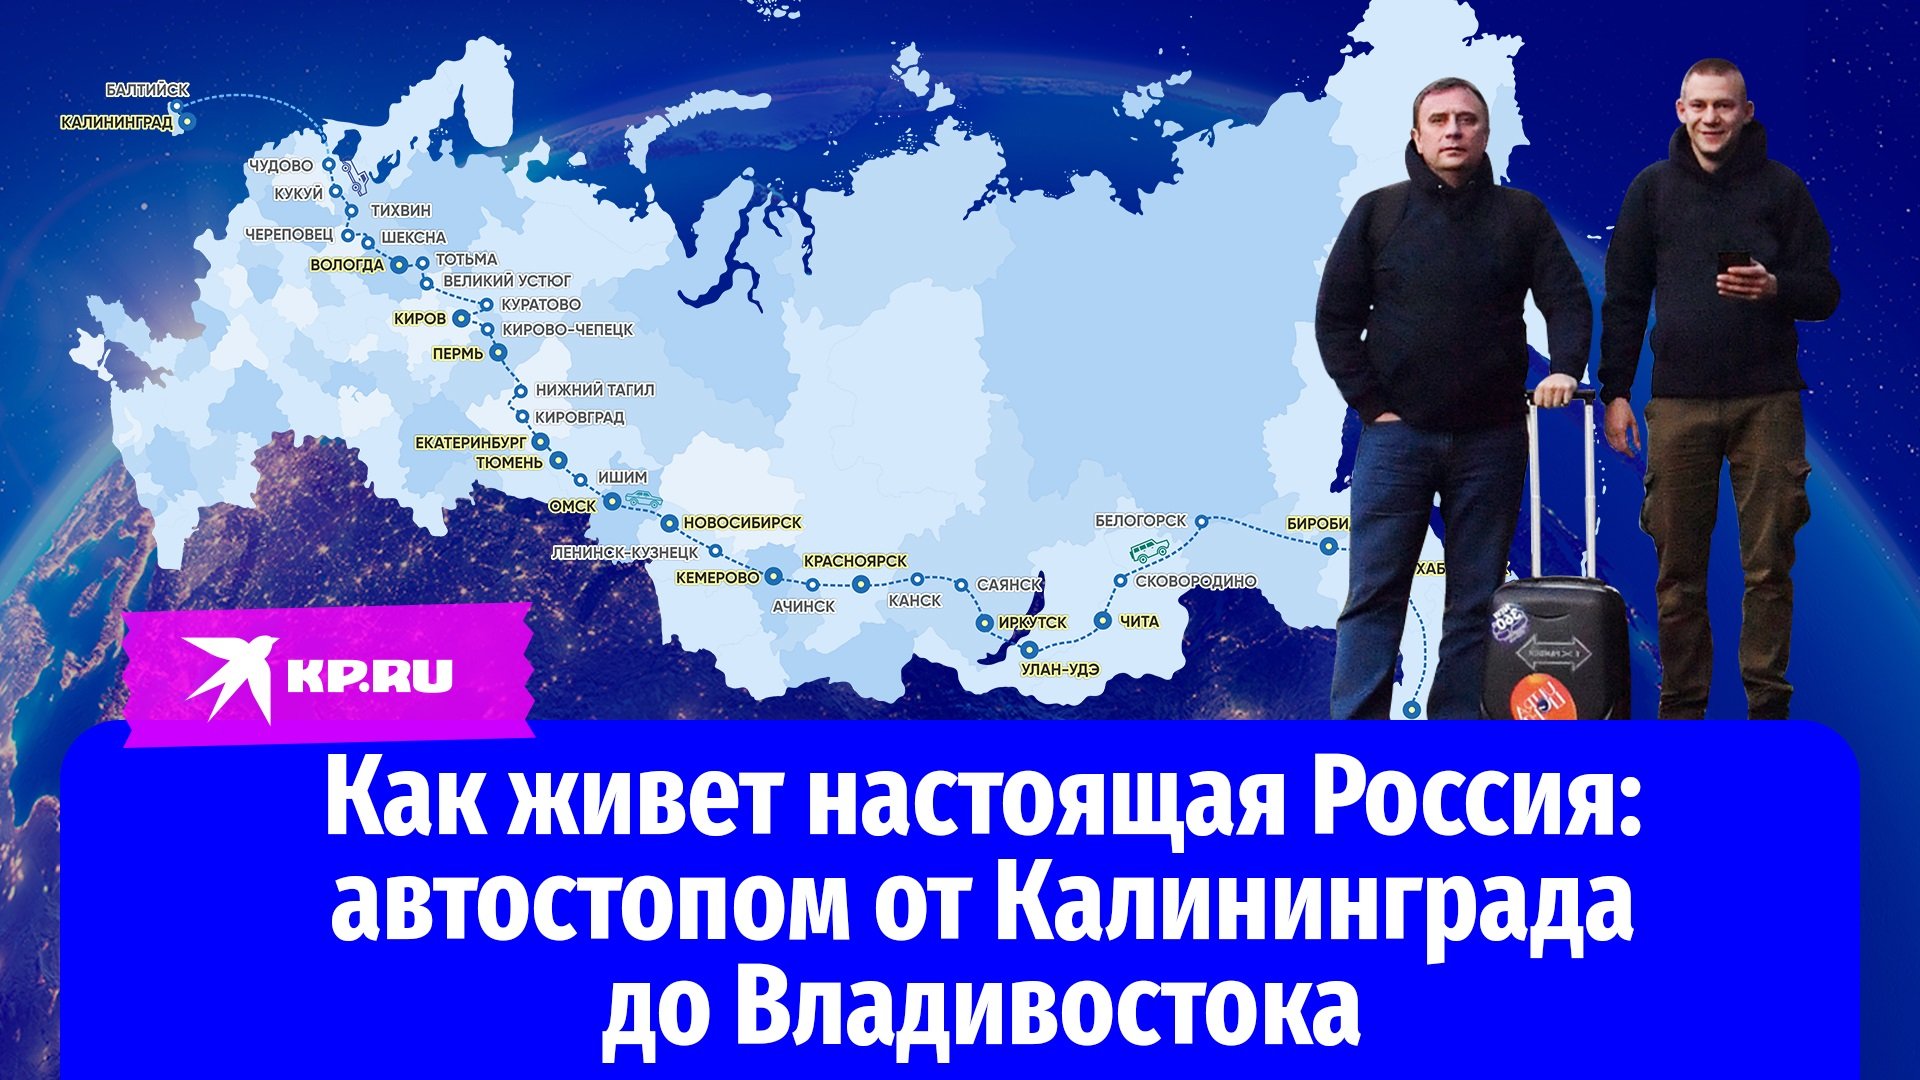 Как живет настоящая Россия: автостопом от Калининграда до Владивостока